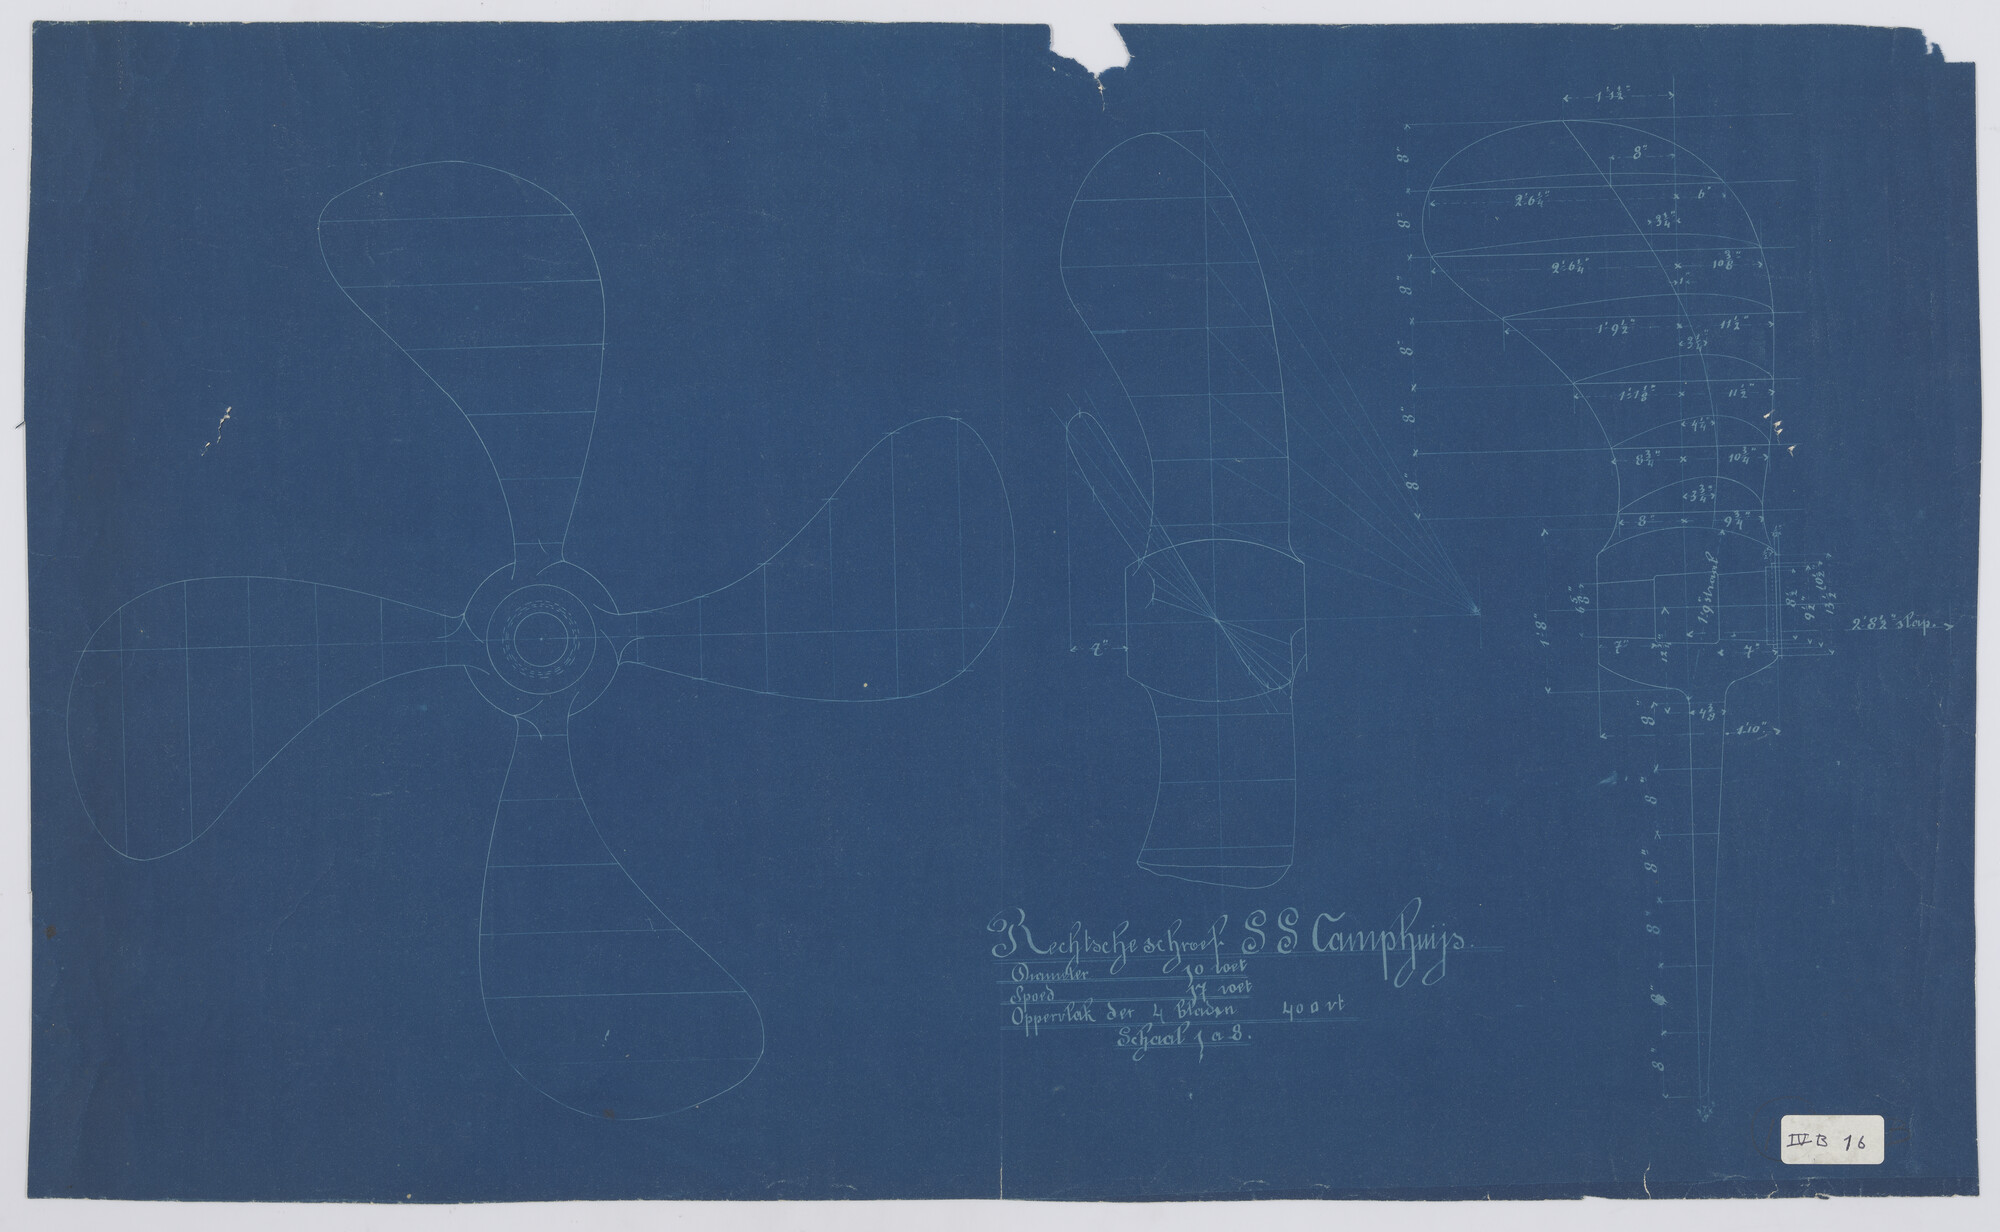 S.0027(048); Schroef van de stoomschepen 'Ruys', 'Tegelberg' en 'Camphuys'; technische tekening